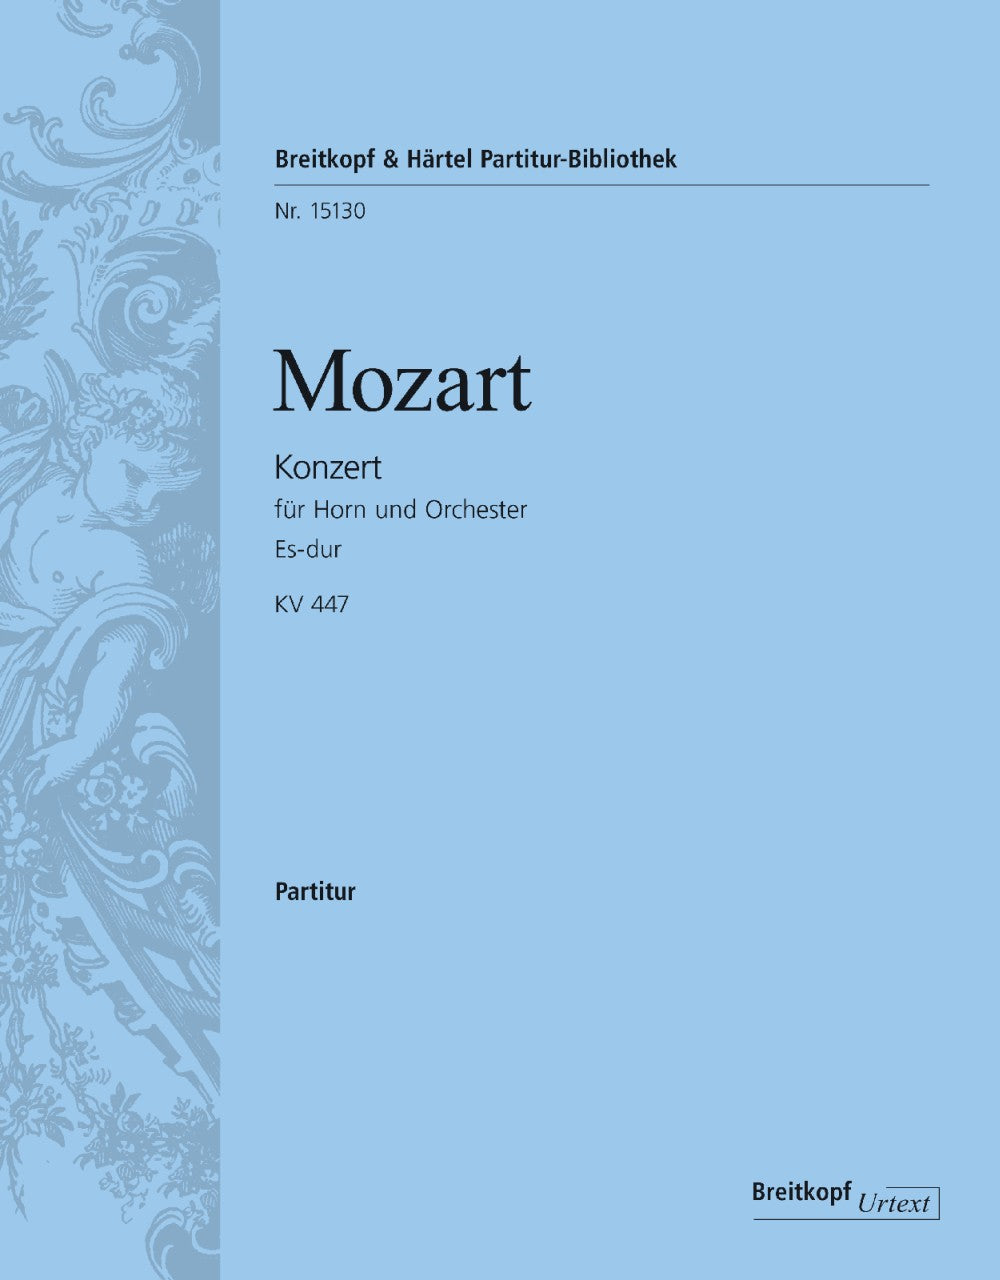 Mozart Horn Concerto No. 3 in Eb major K. 447